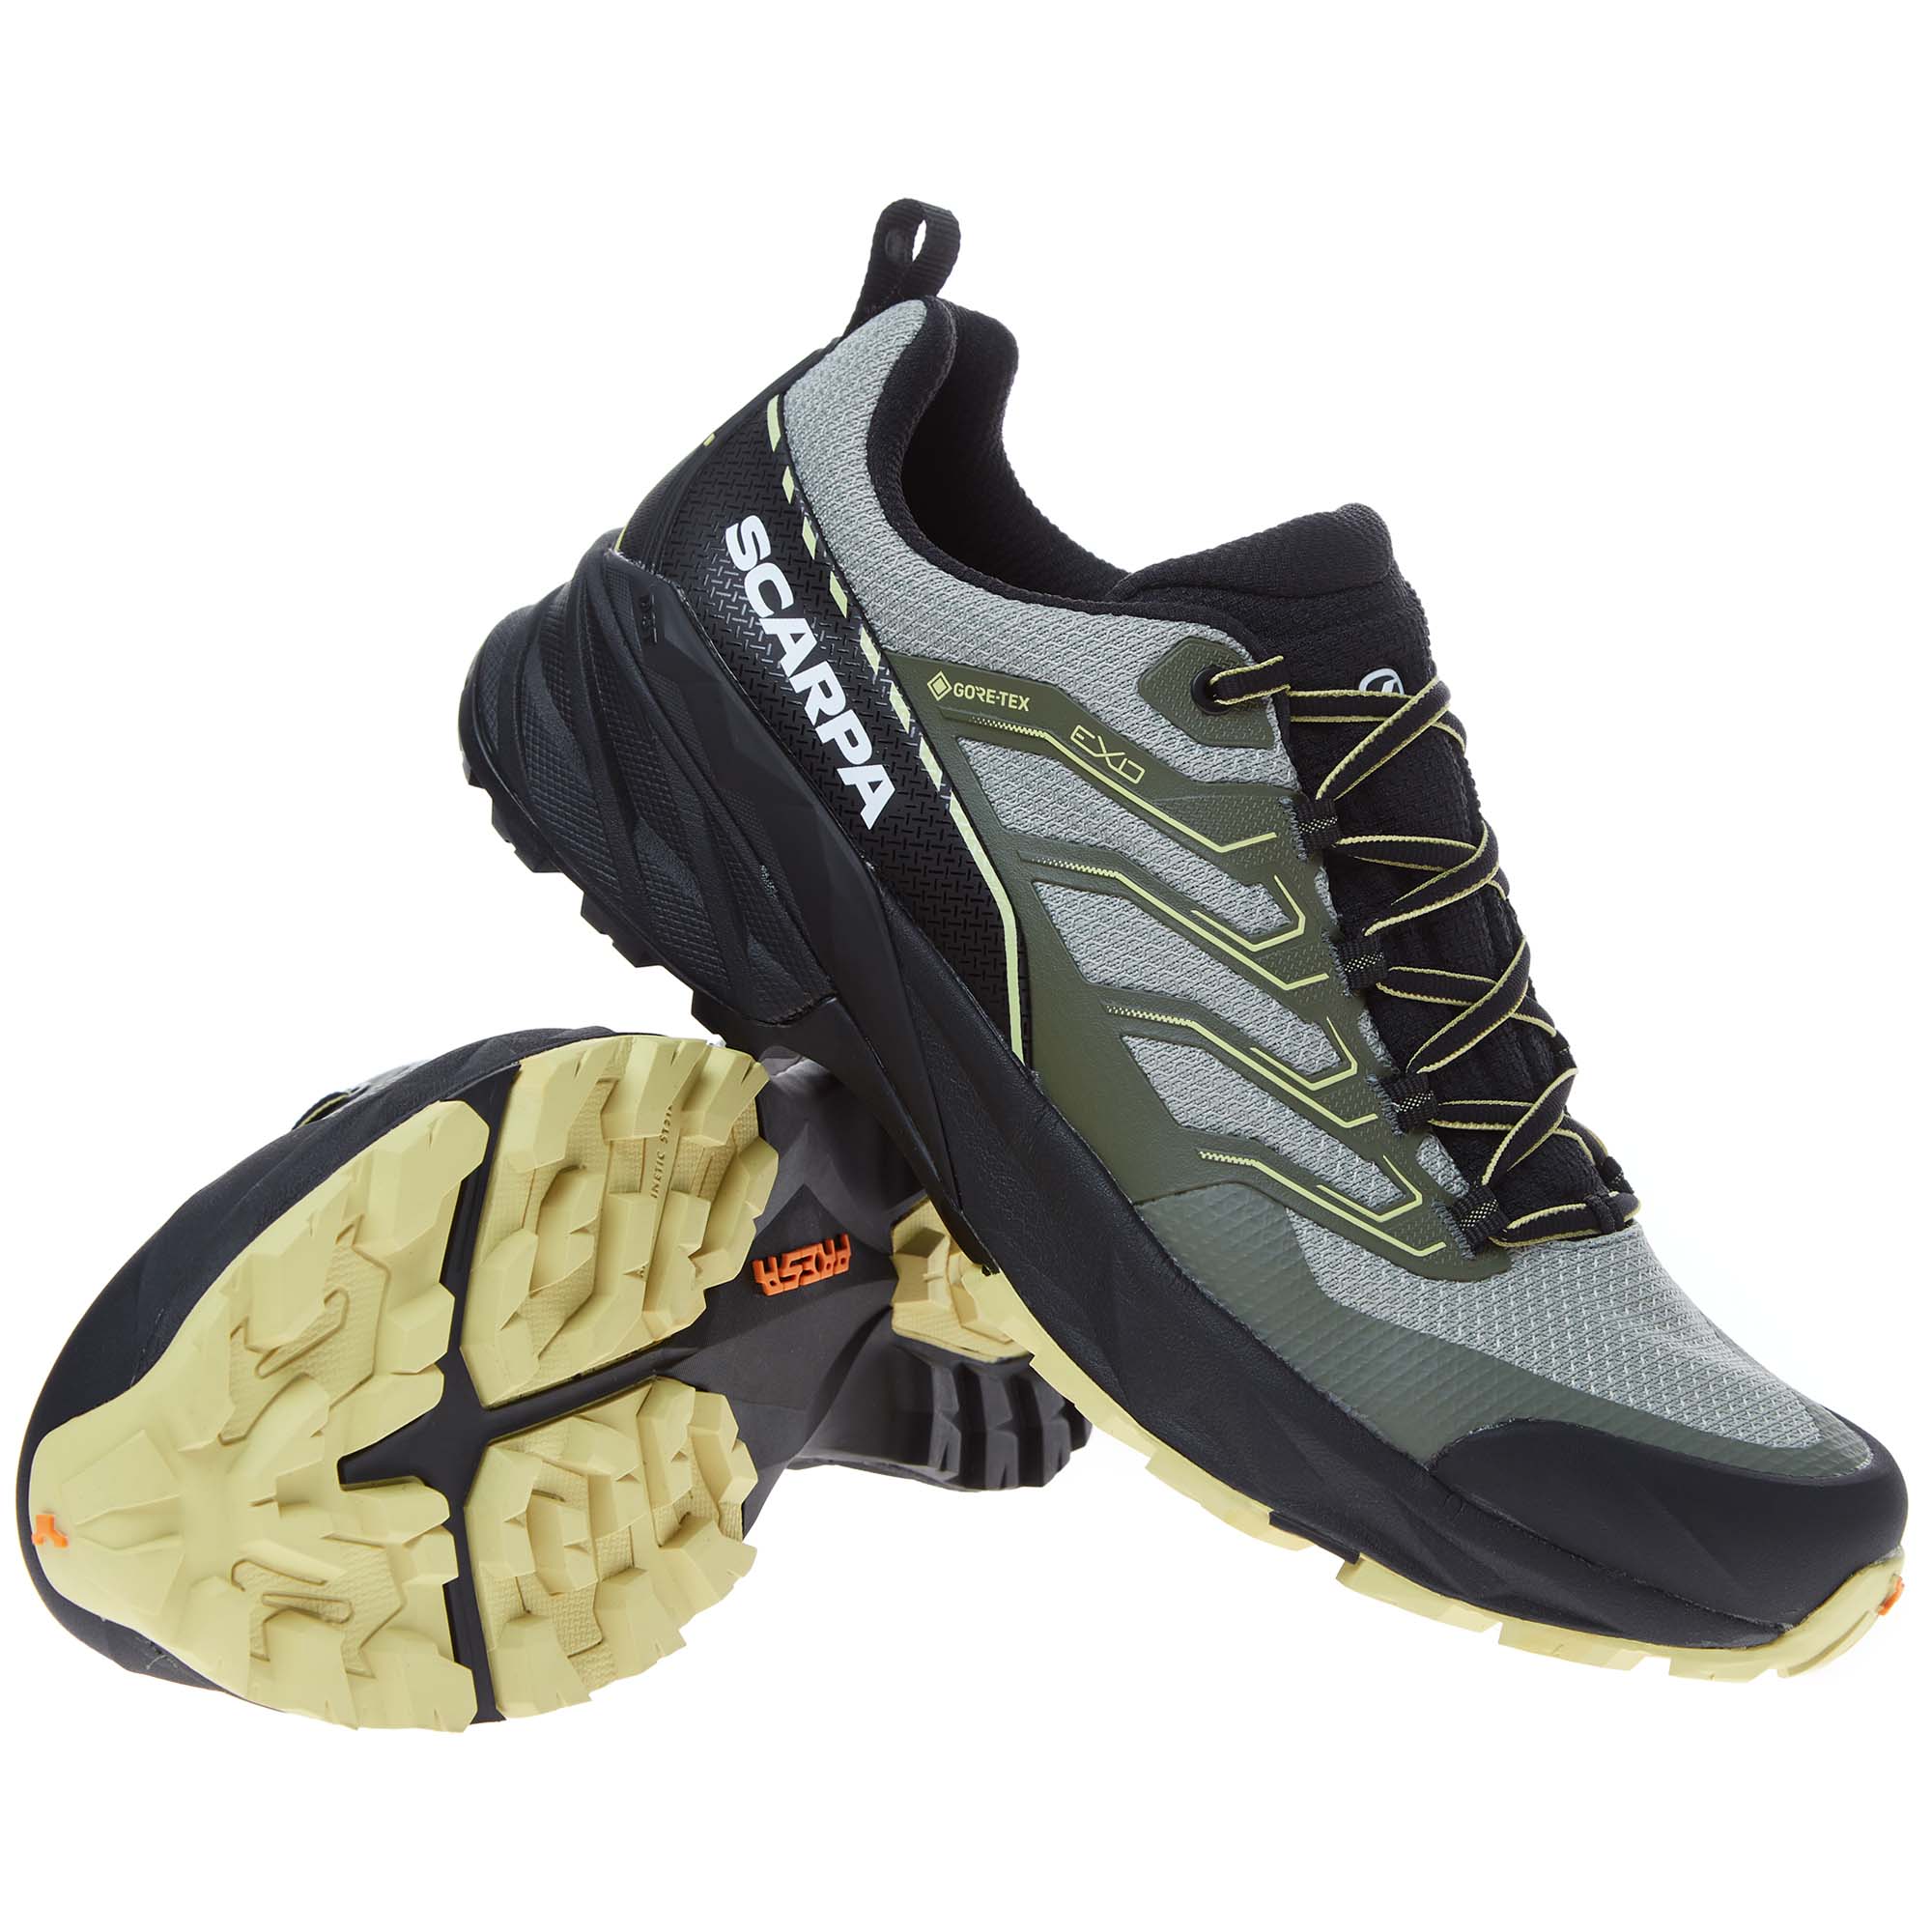 Scarpa Rush 2 GTX Women's Hiking Shoes